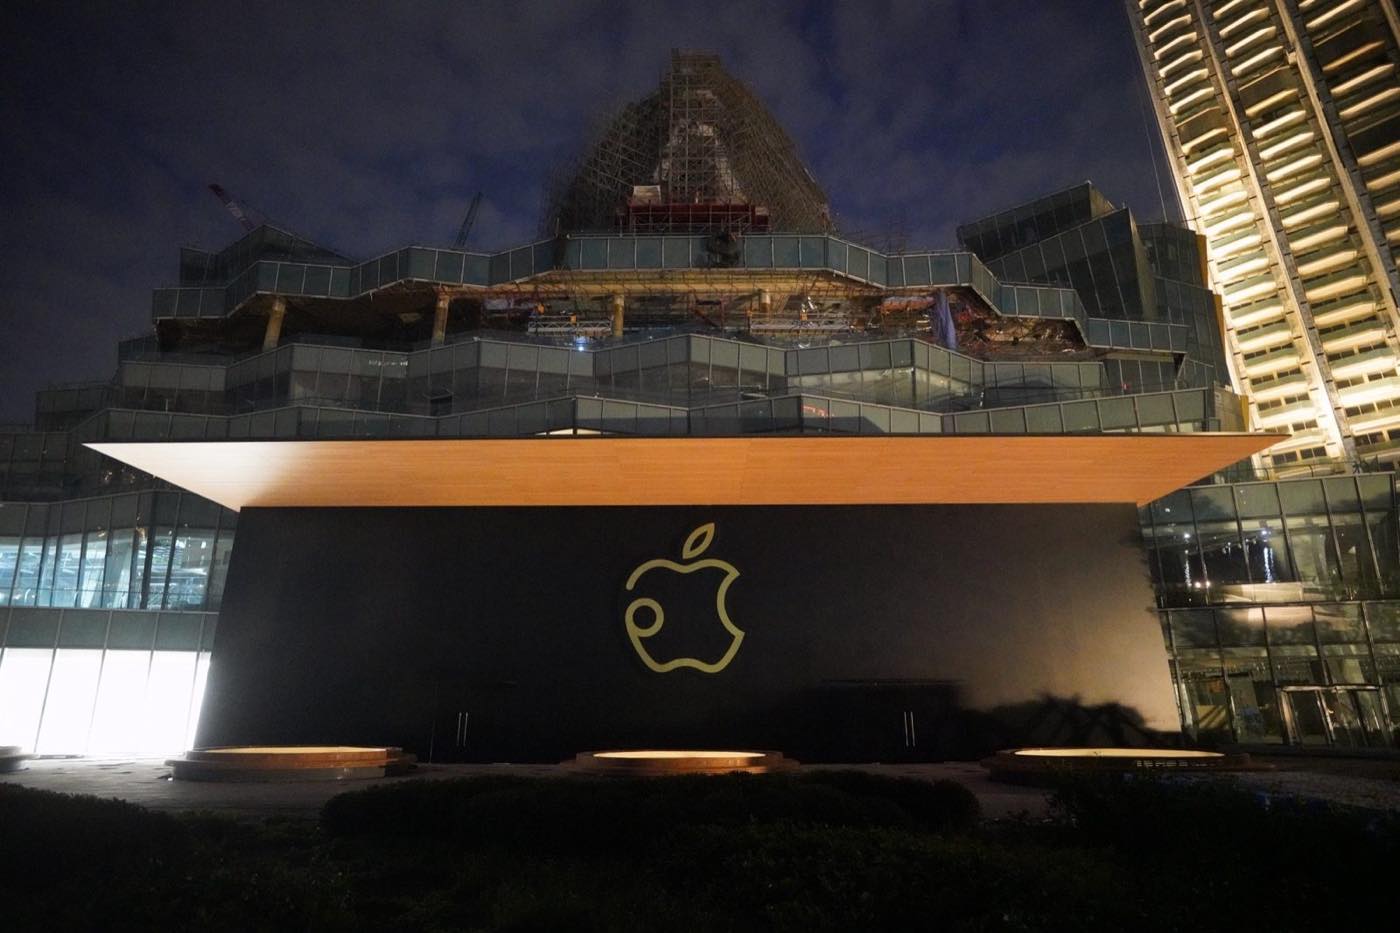 Apple、タイのバンコクに同国初の直営店｢Apple Iconsiam｣を11月10日にオープンへ